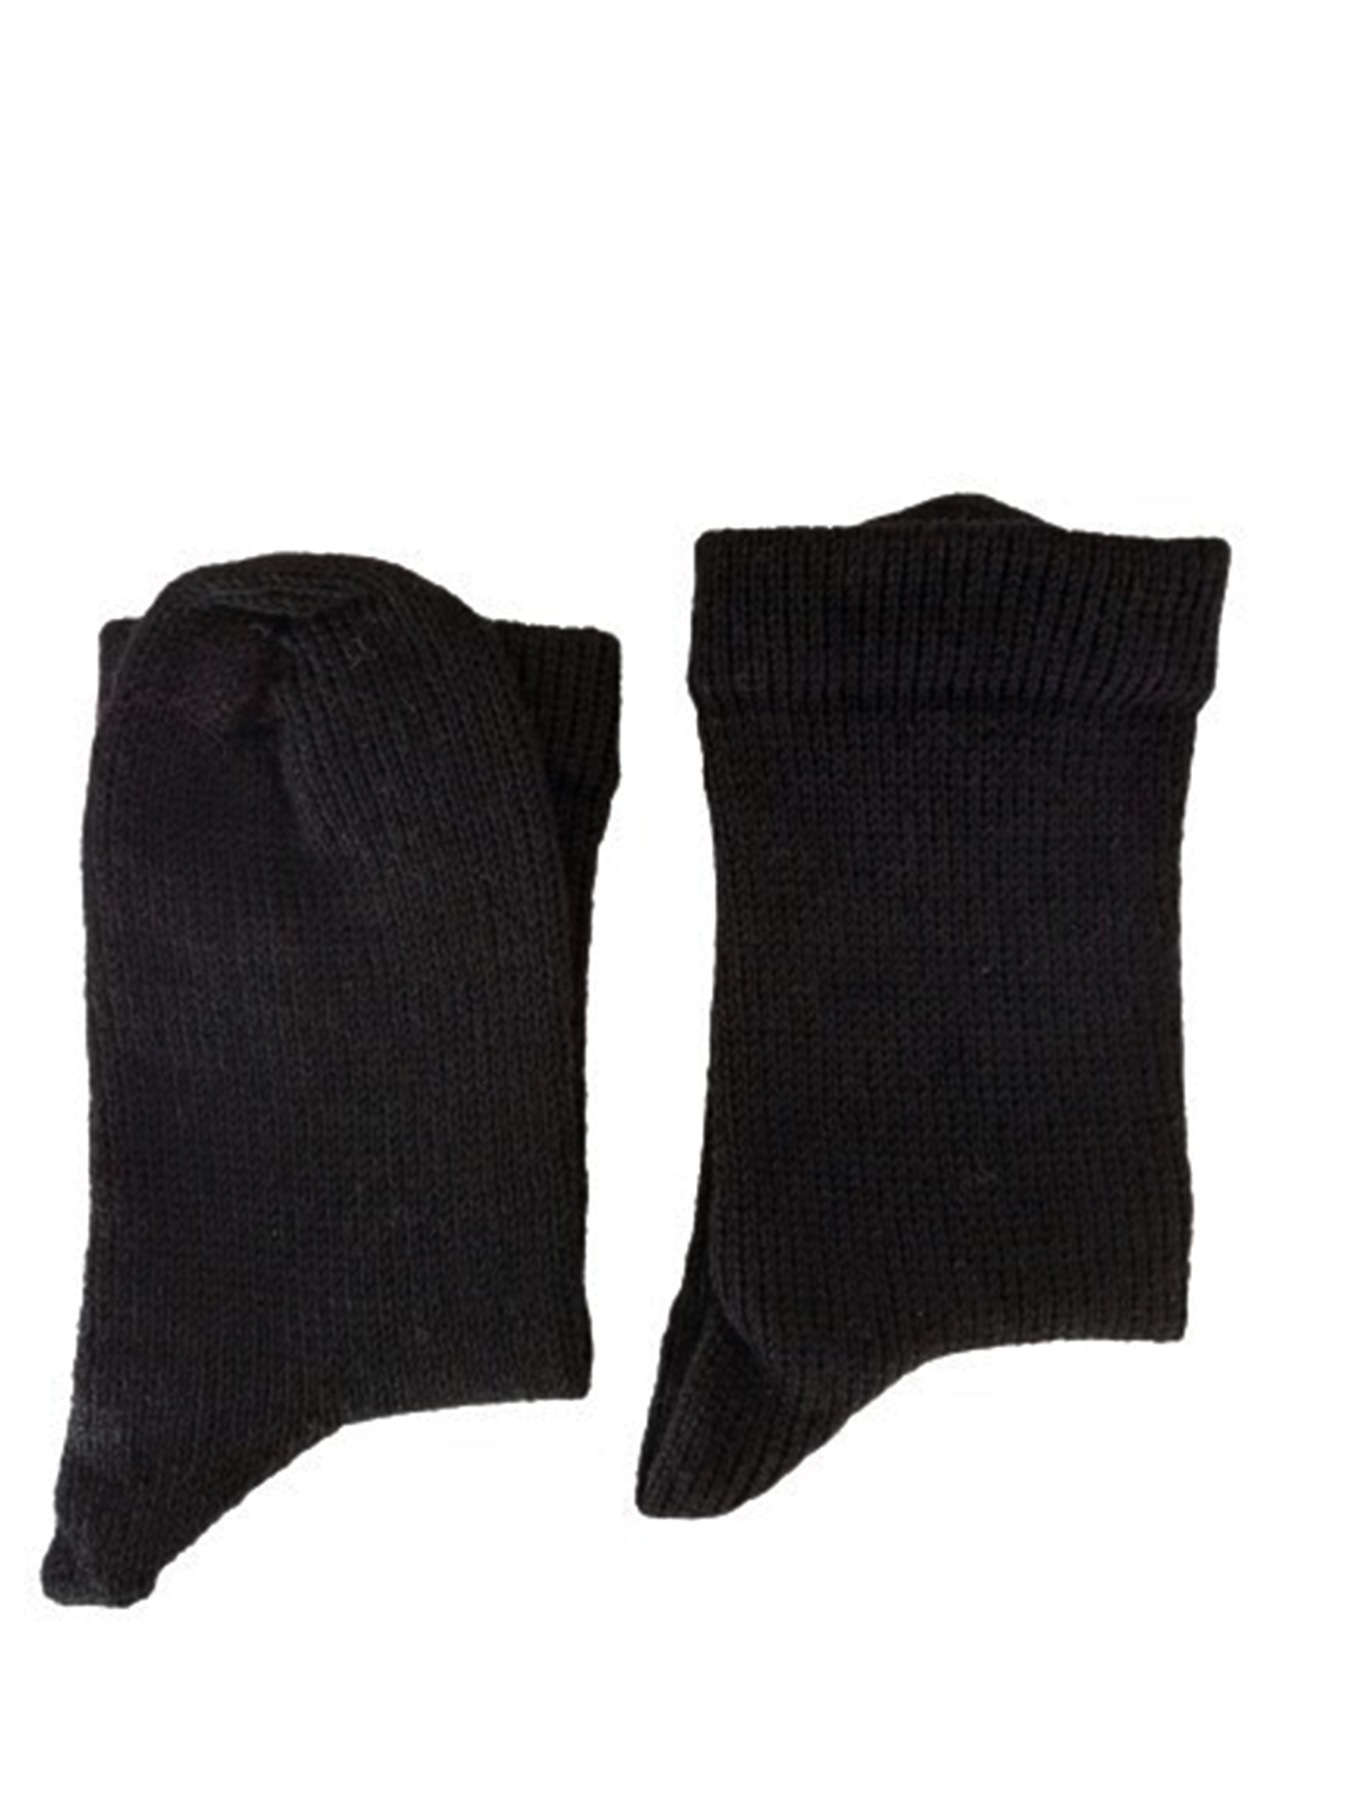 Größe 38/39 - Socken in klassischem Schwarz 2